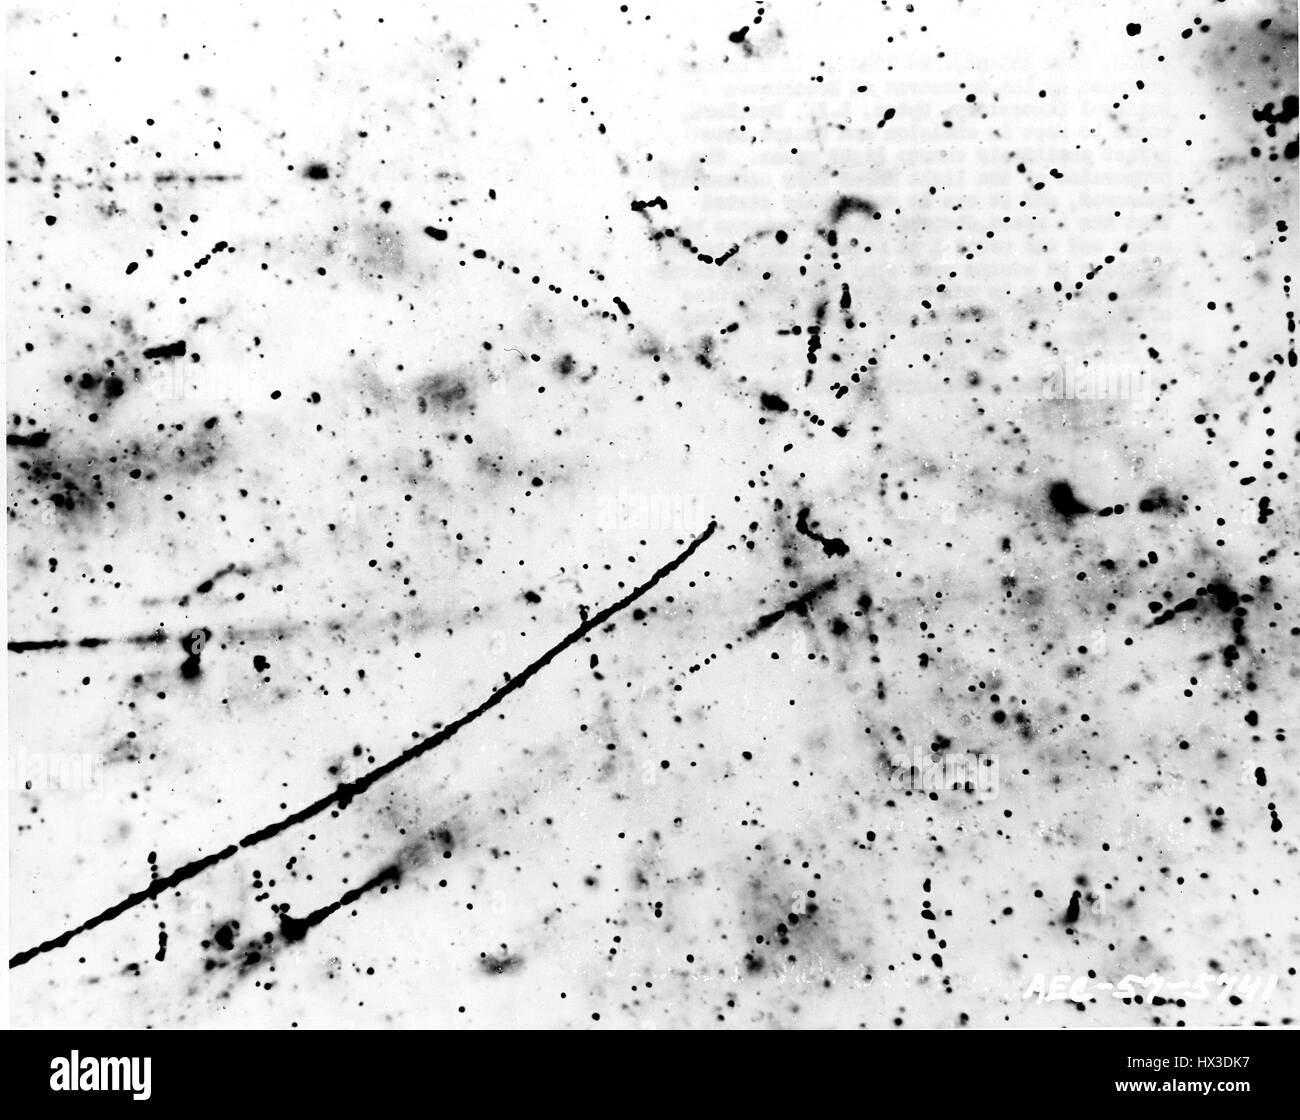 Un k meson prodotta dall'Cosmotron presso il Brookhaven National Laboratory viene a poggiare in emulsione e decadimento in una rapida carica positivamente light meson, Upton, New York, 1957. Immagine cortesia del Dipartimento Americano di Energia. Foto Stock